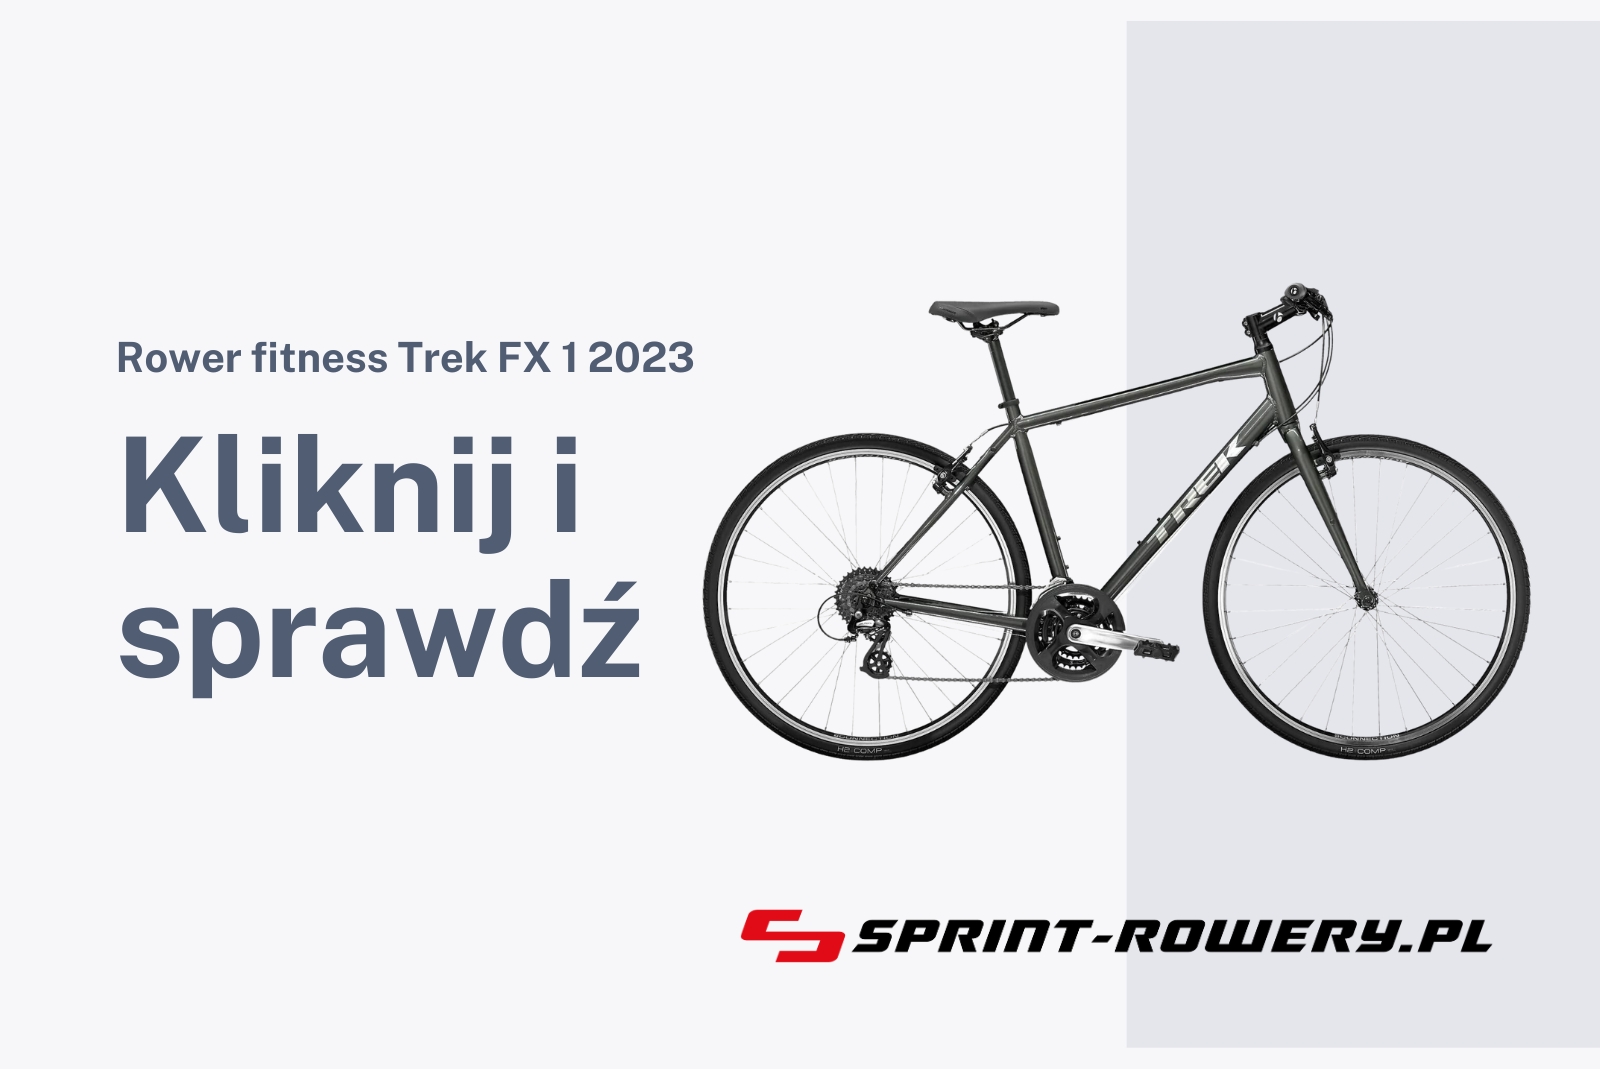 Rower fitness Trek FX 1 2023